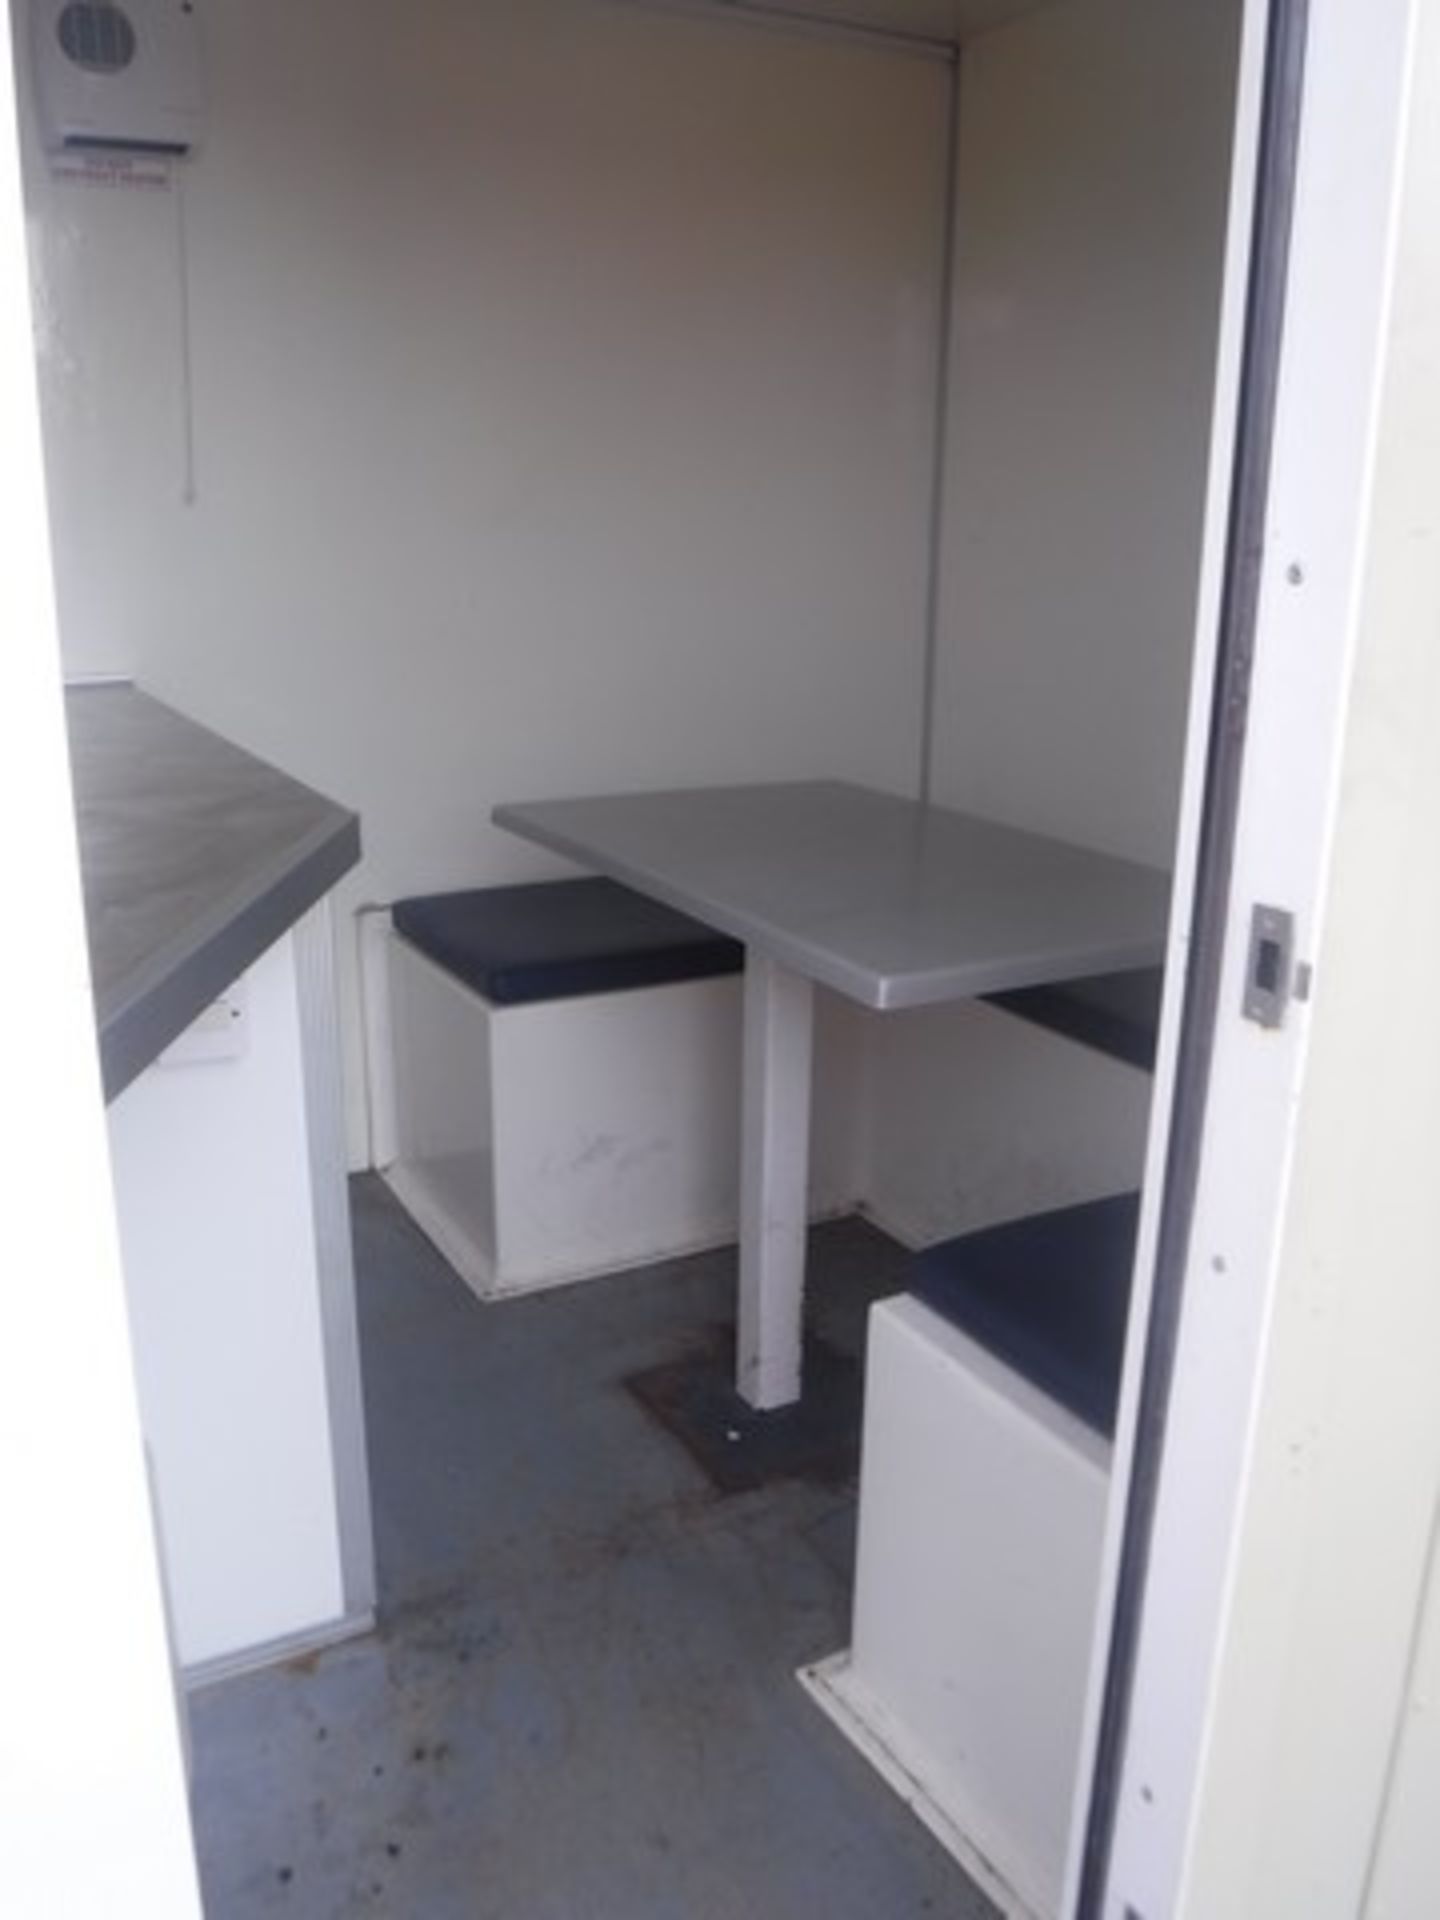 12 x 8 TOWABLE welfare cabin. Onboard generator, kitchen facilities, toilet & drying room. S/N SSM10 - Bild 4 aus 22